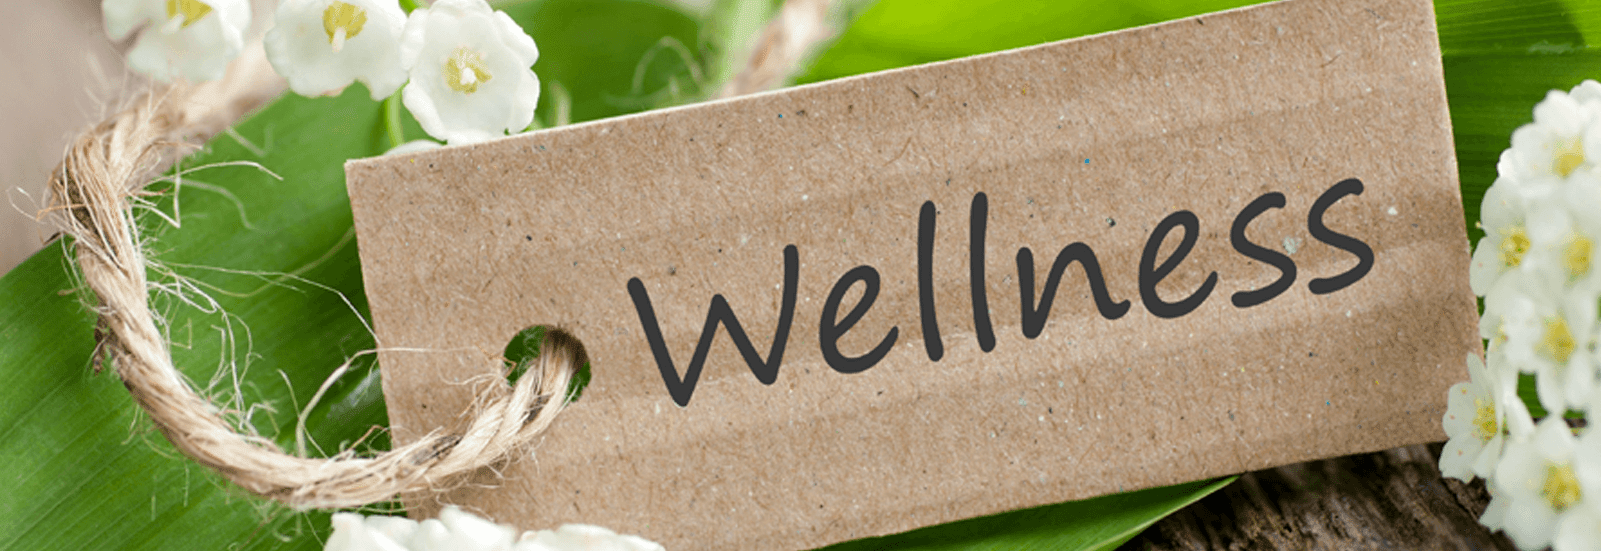 Wellness - Ayurveda/The Science of Life - The Himalaya Drug Company